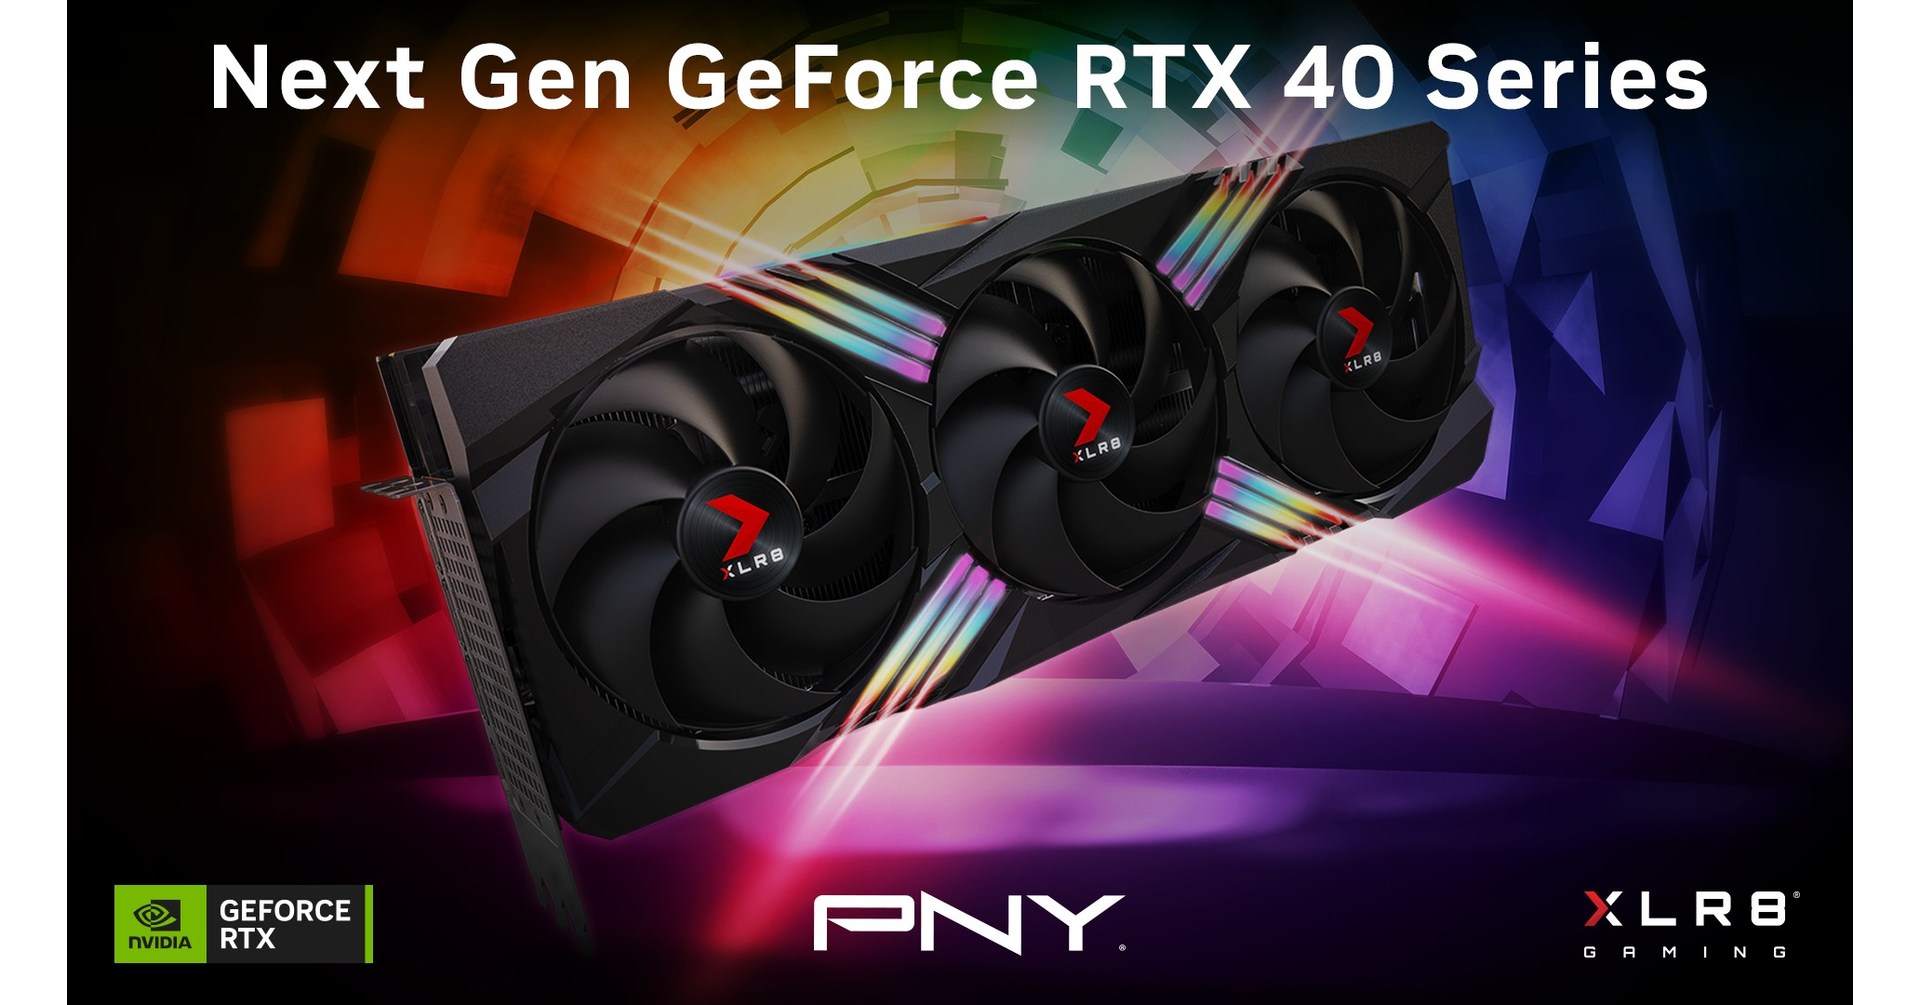 PNY NVIDIA GeForce RTX 4080 16GB GDDR6X PCI Express 4.0